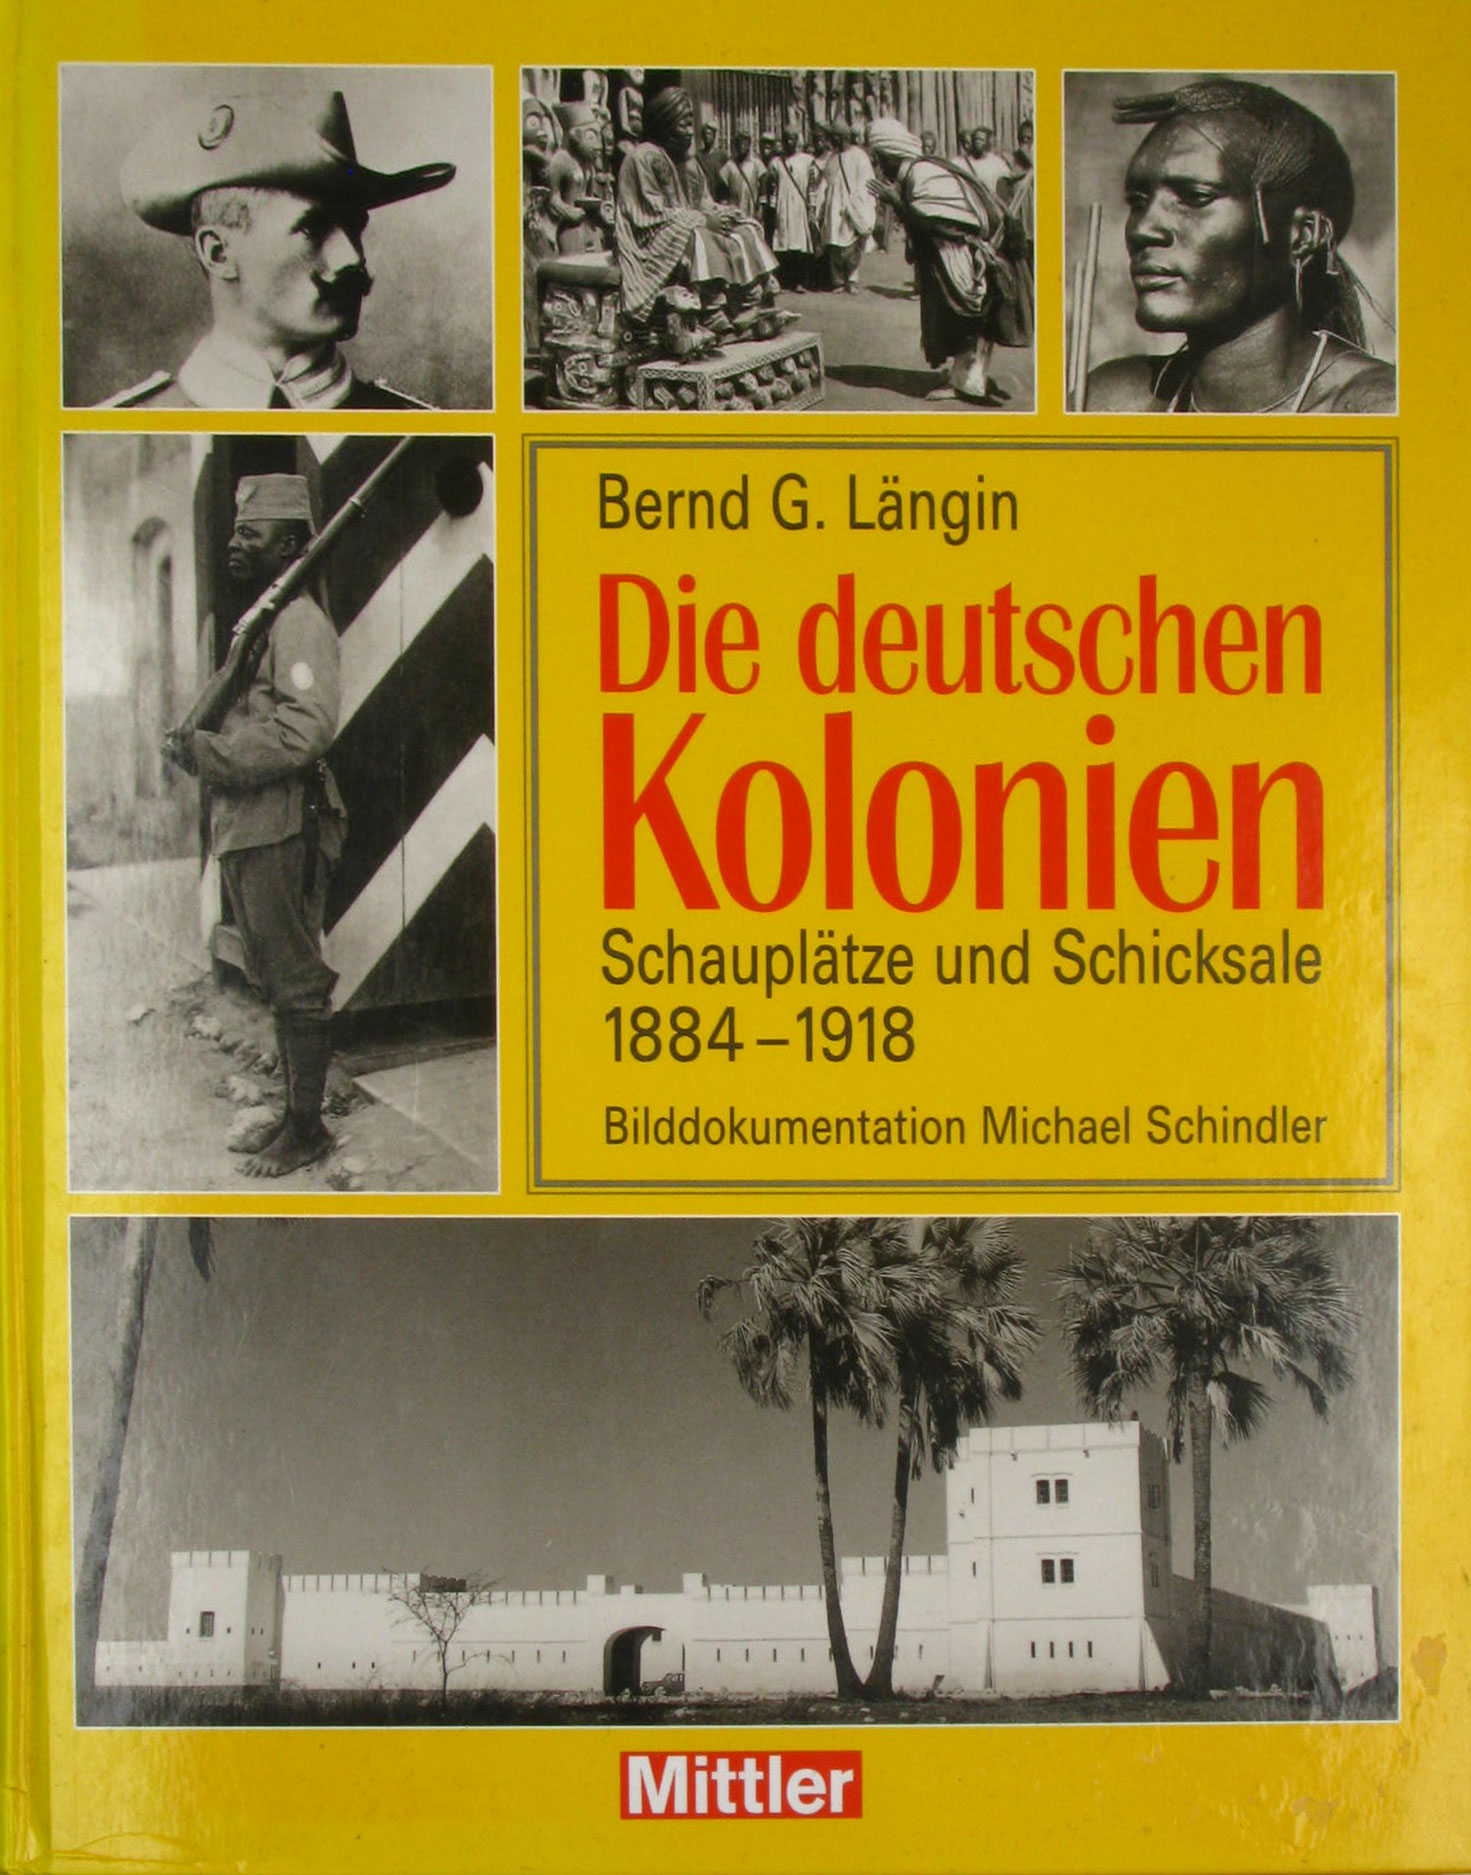 Längin, Bernd G.:  Die deutschen Kolonien. Schauplätze und Schicksale 1884-1918. 